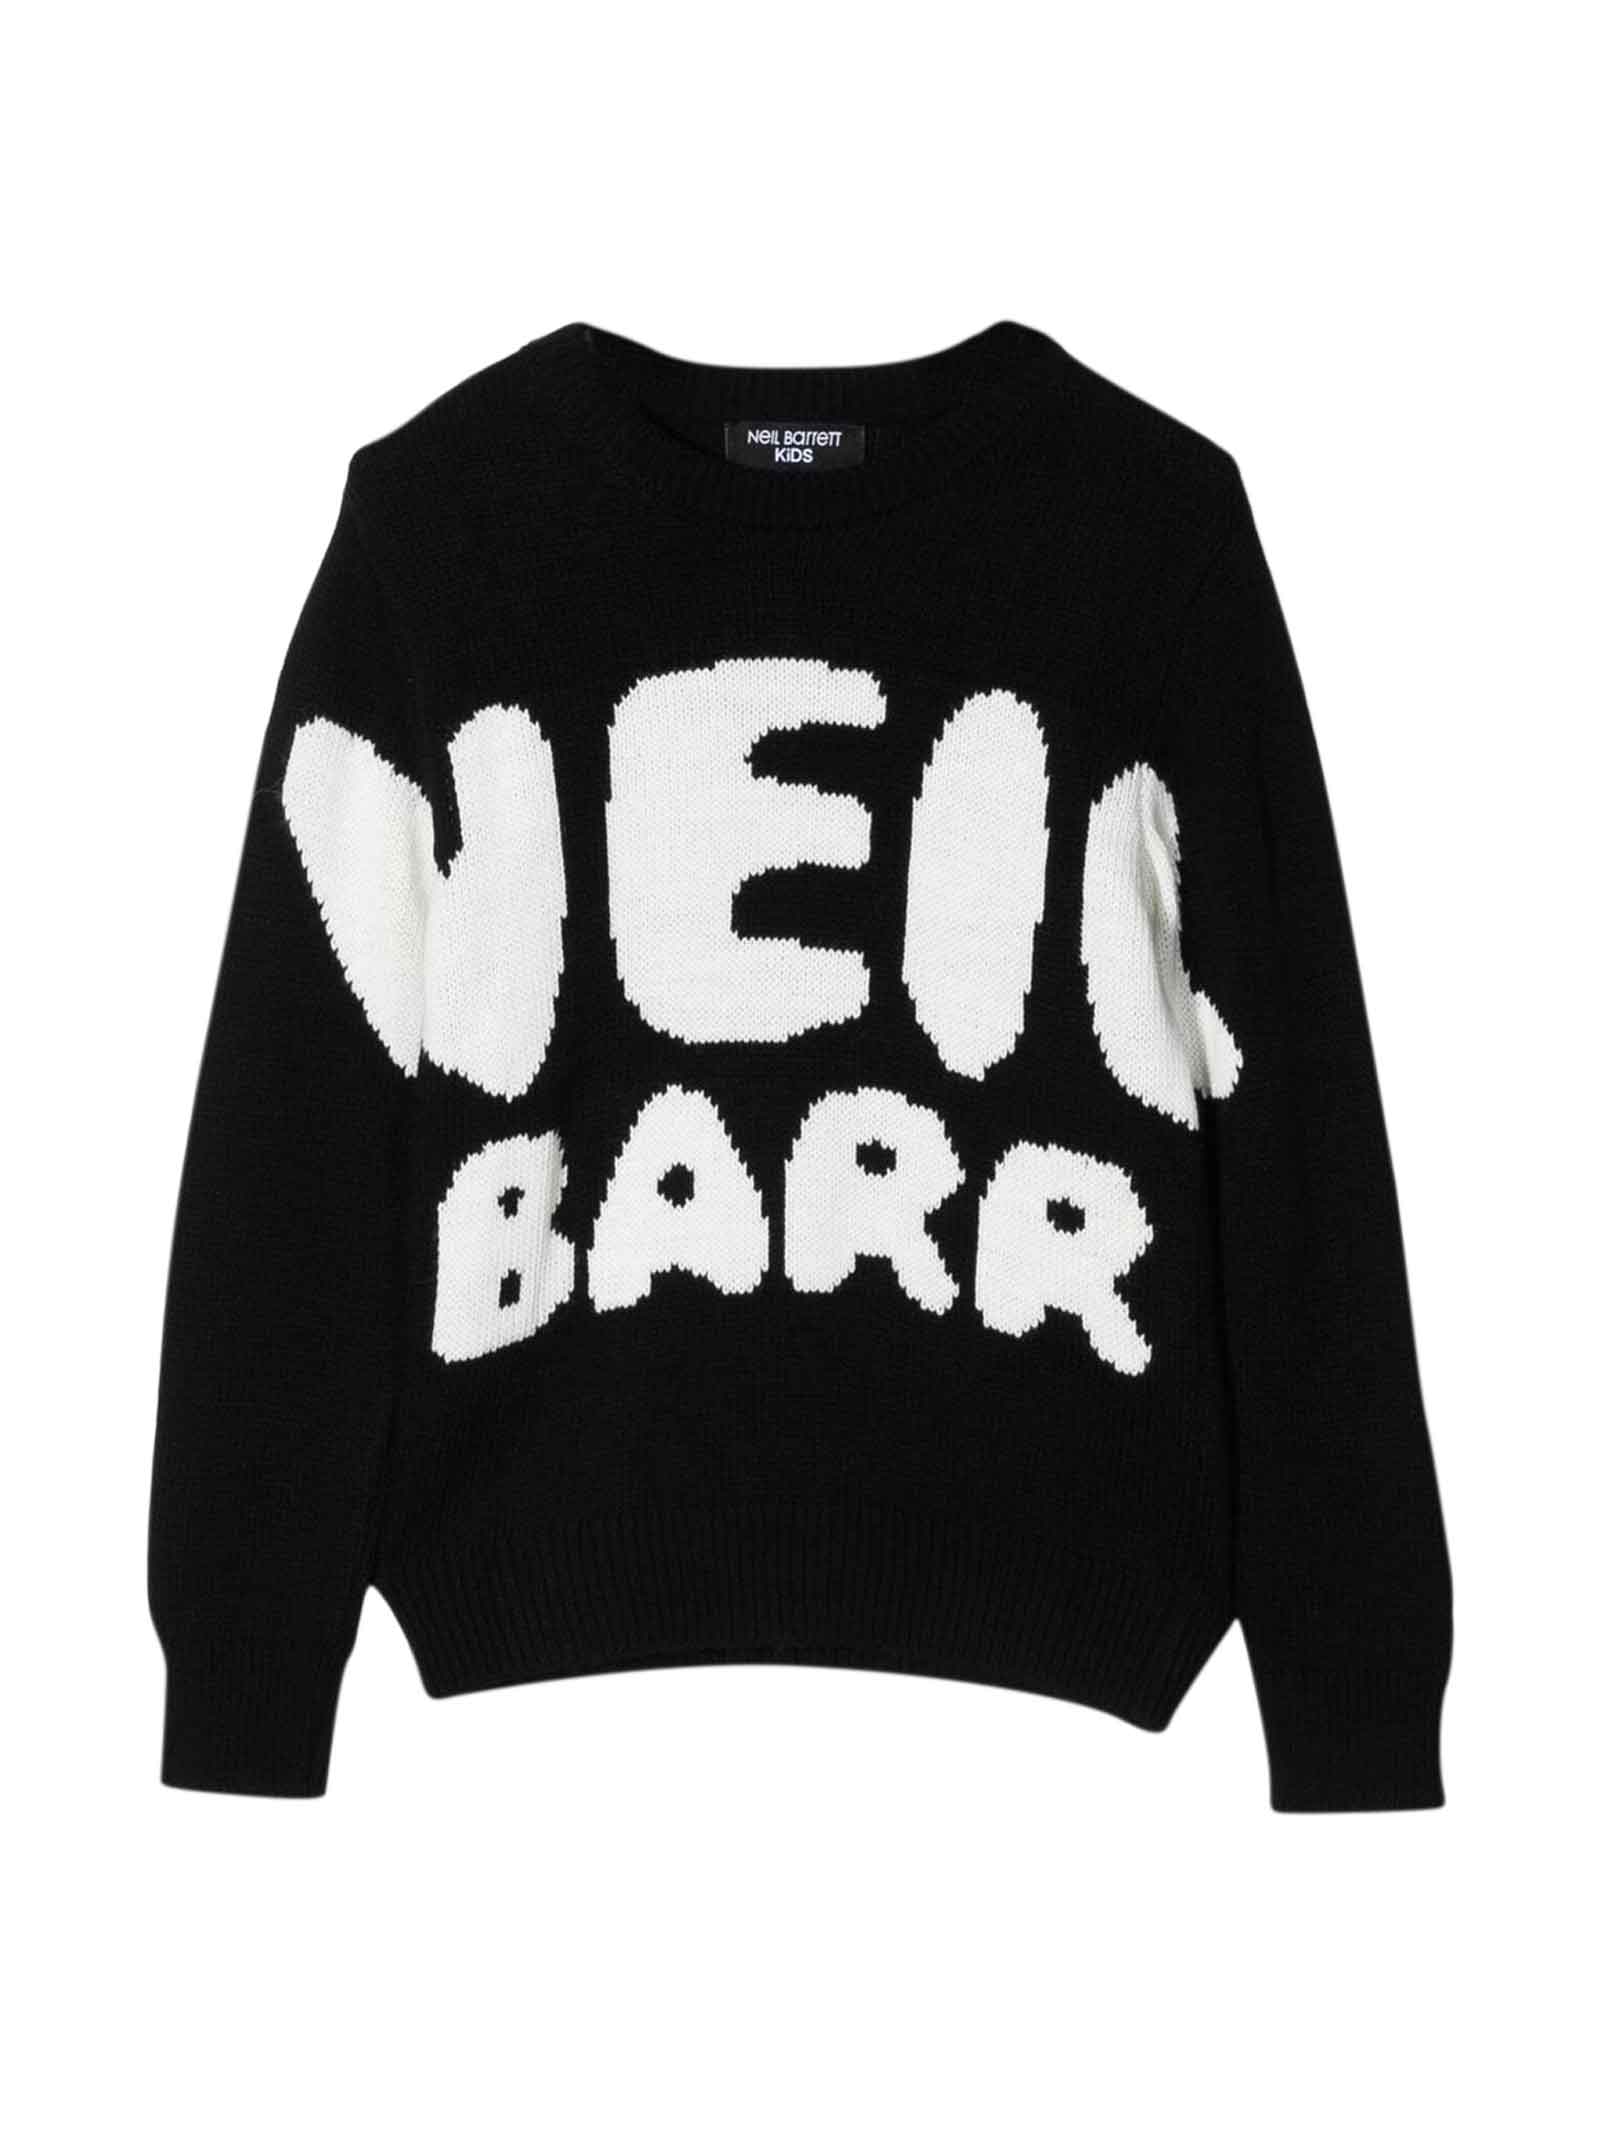 Neil Barrett Black Sweater